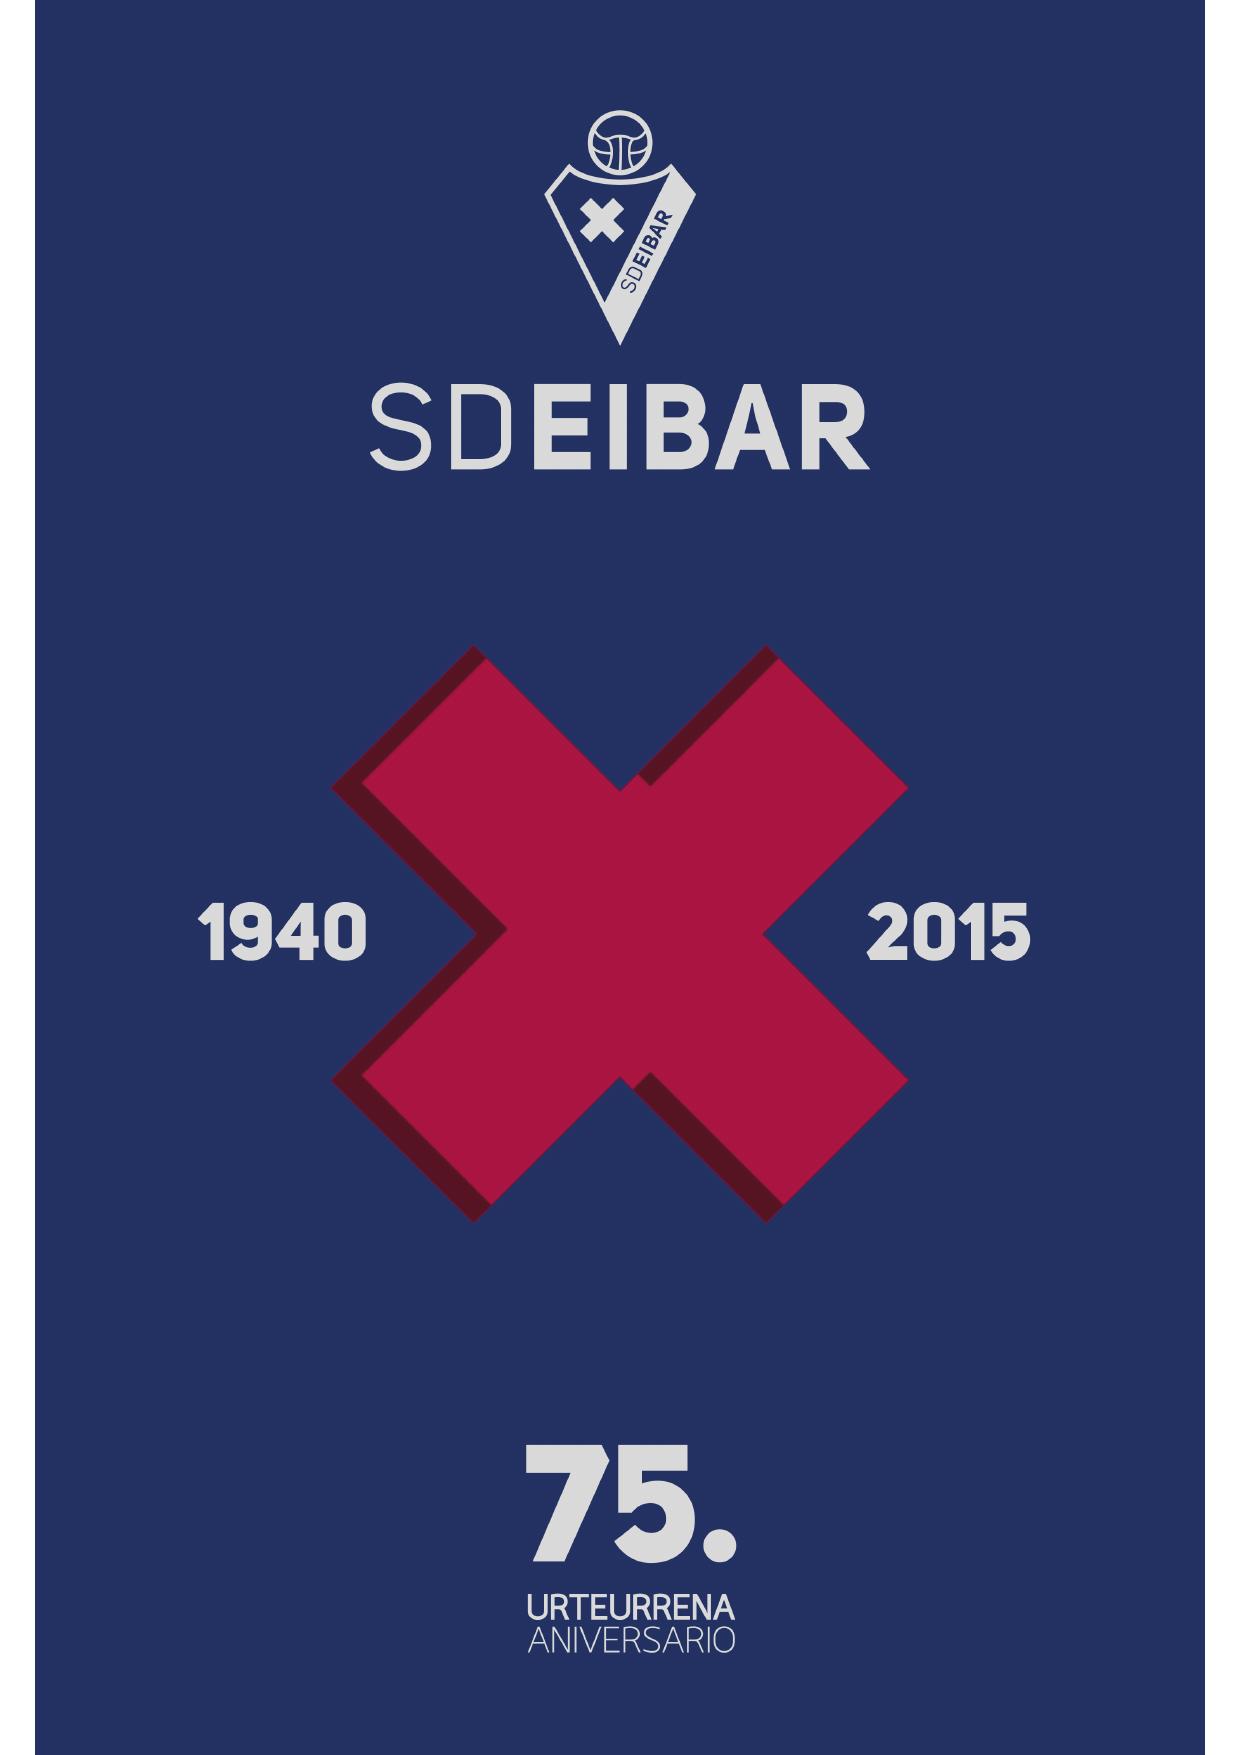 El libro publicado por la Fundación SD Eibar “SD EIBAR 75. urteurrena / 75º Aniversario - 1940 X 2015”; un documento de interés histórico y deportivo.